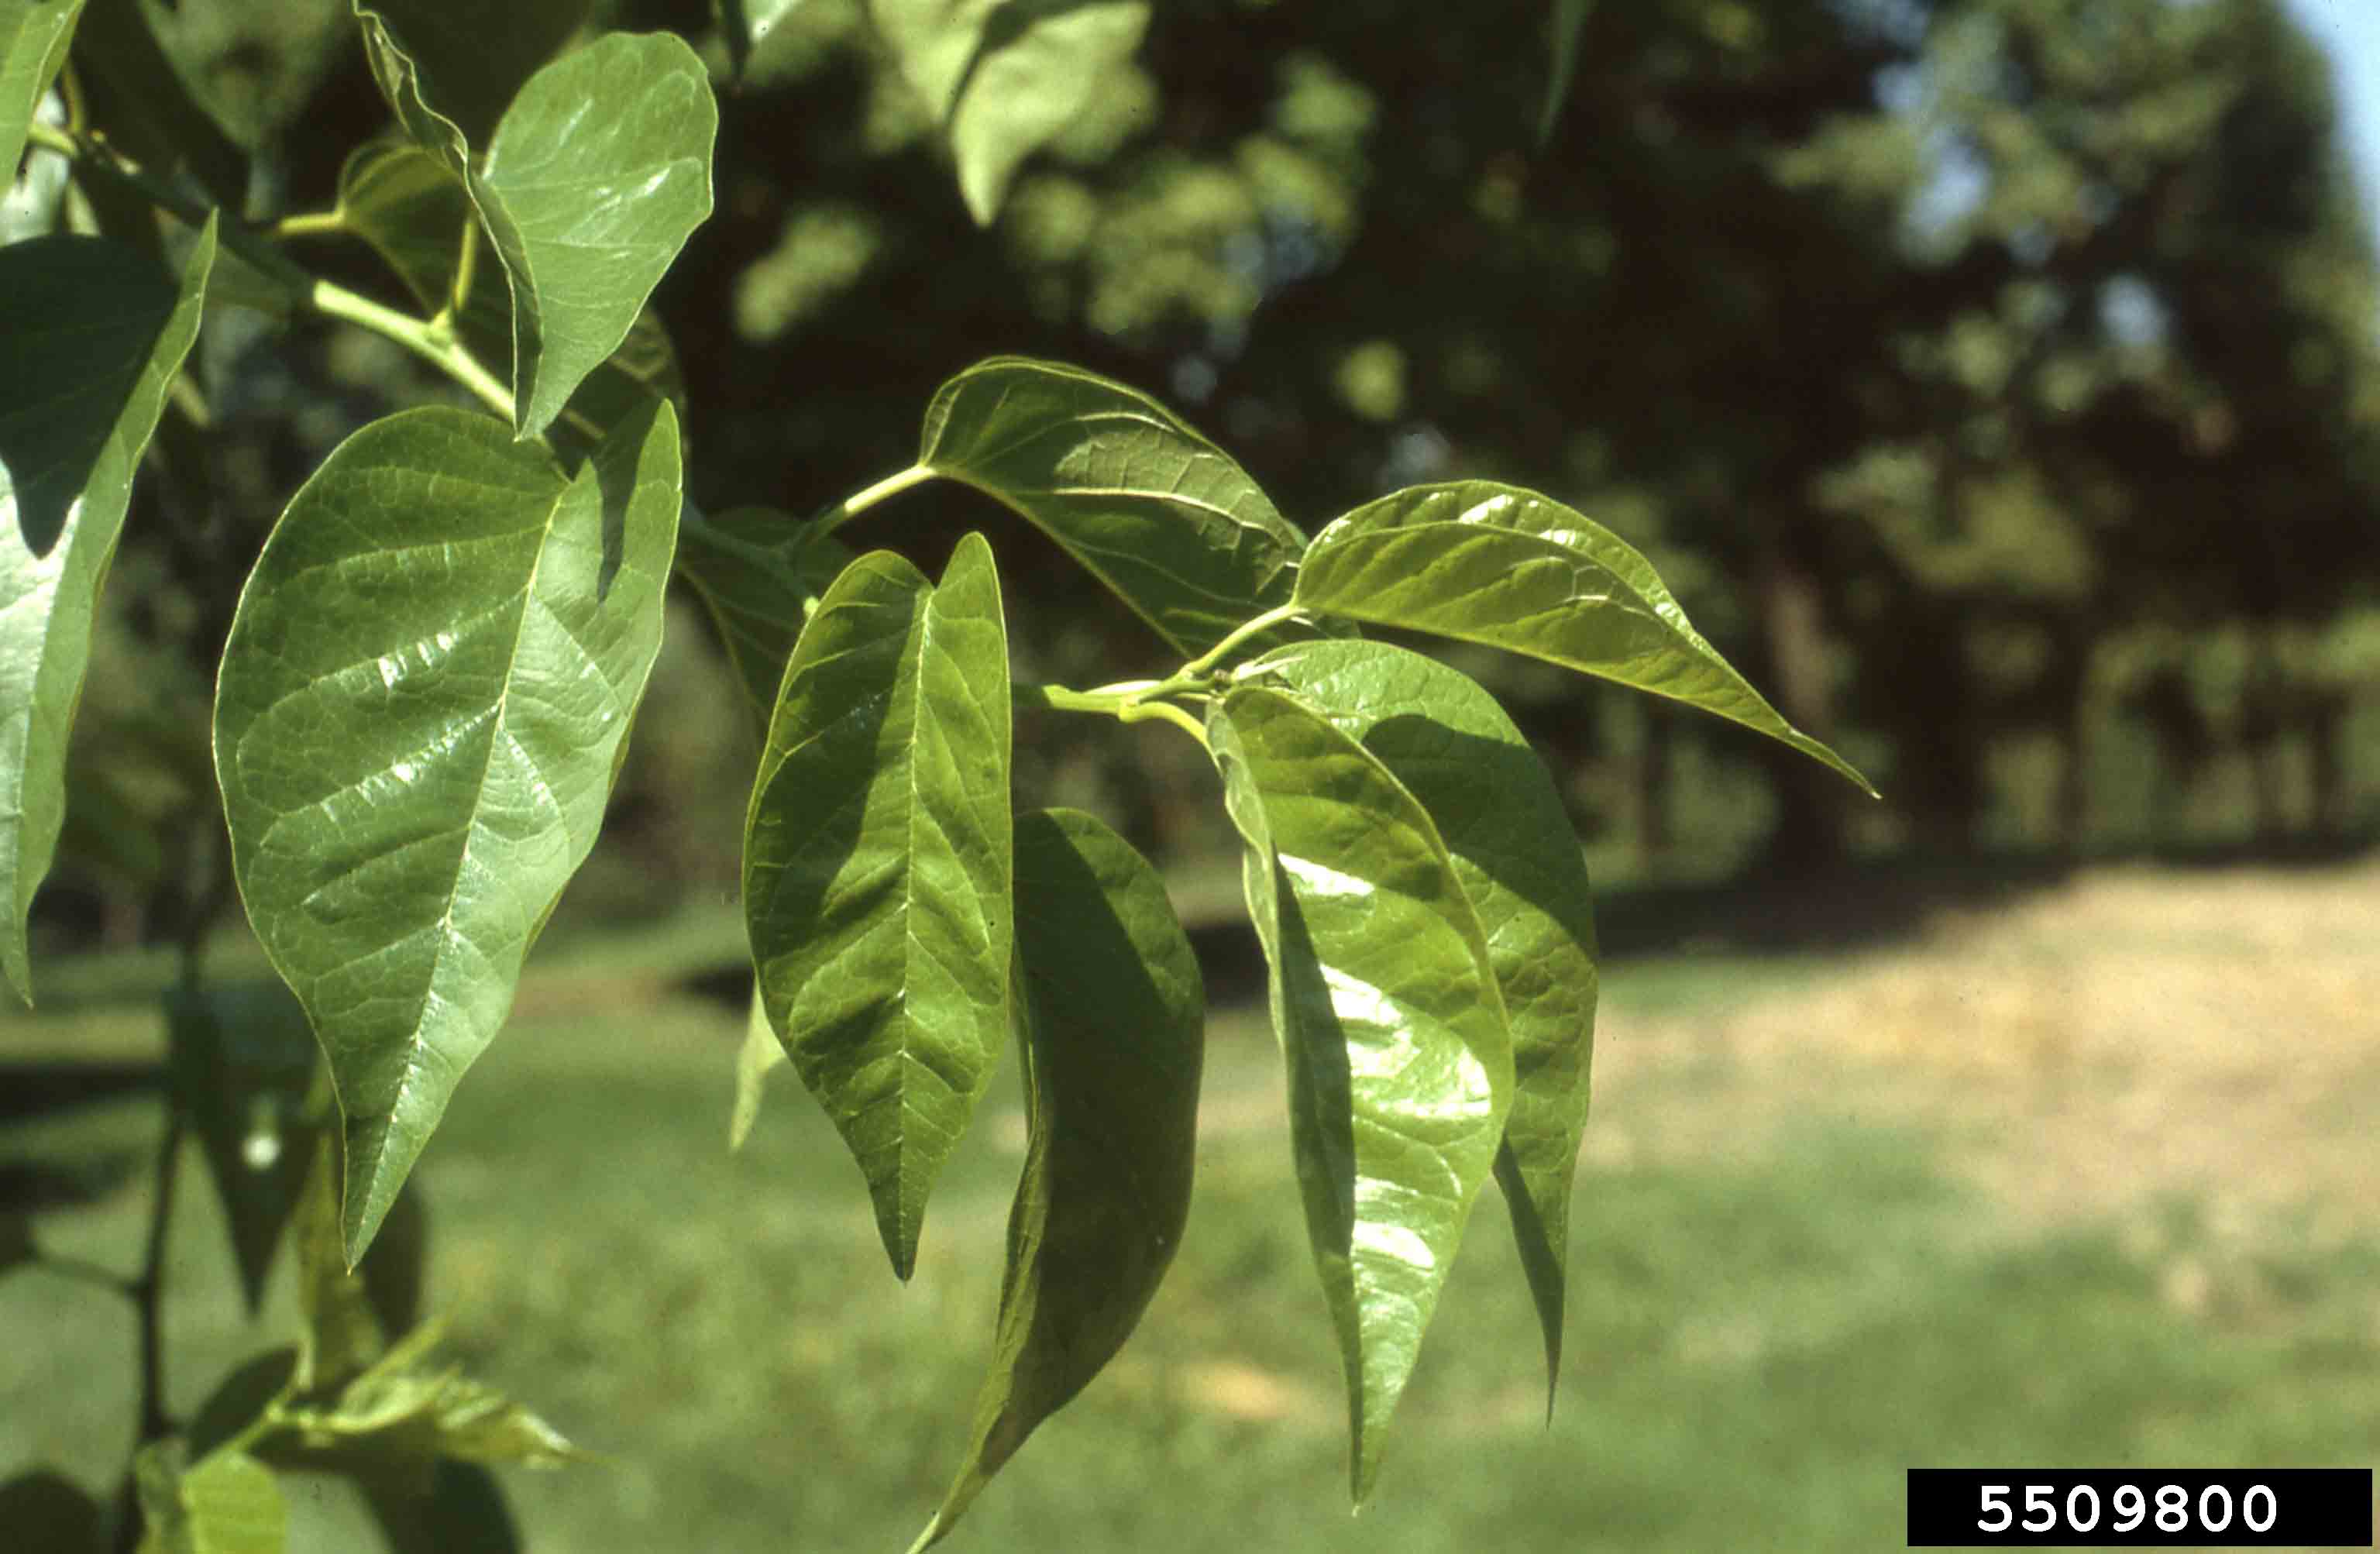 Osage-orange leaves